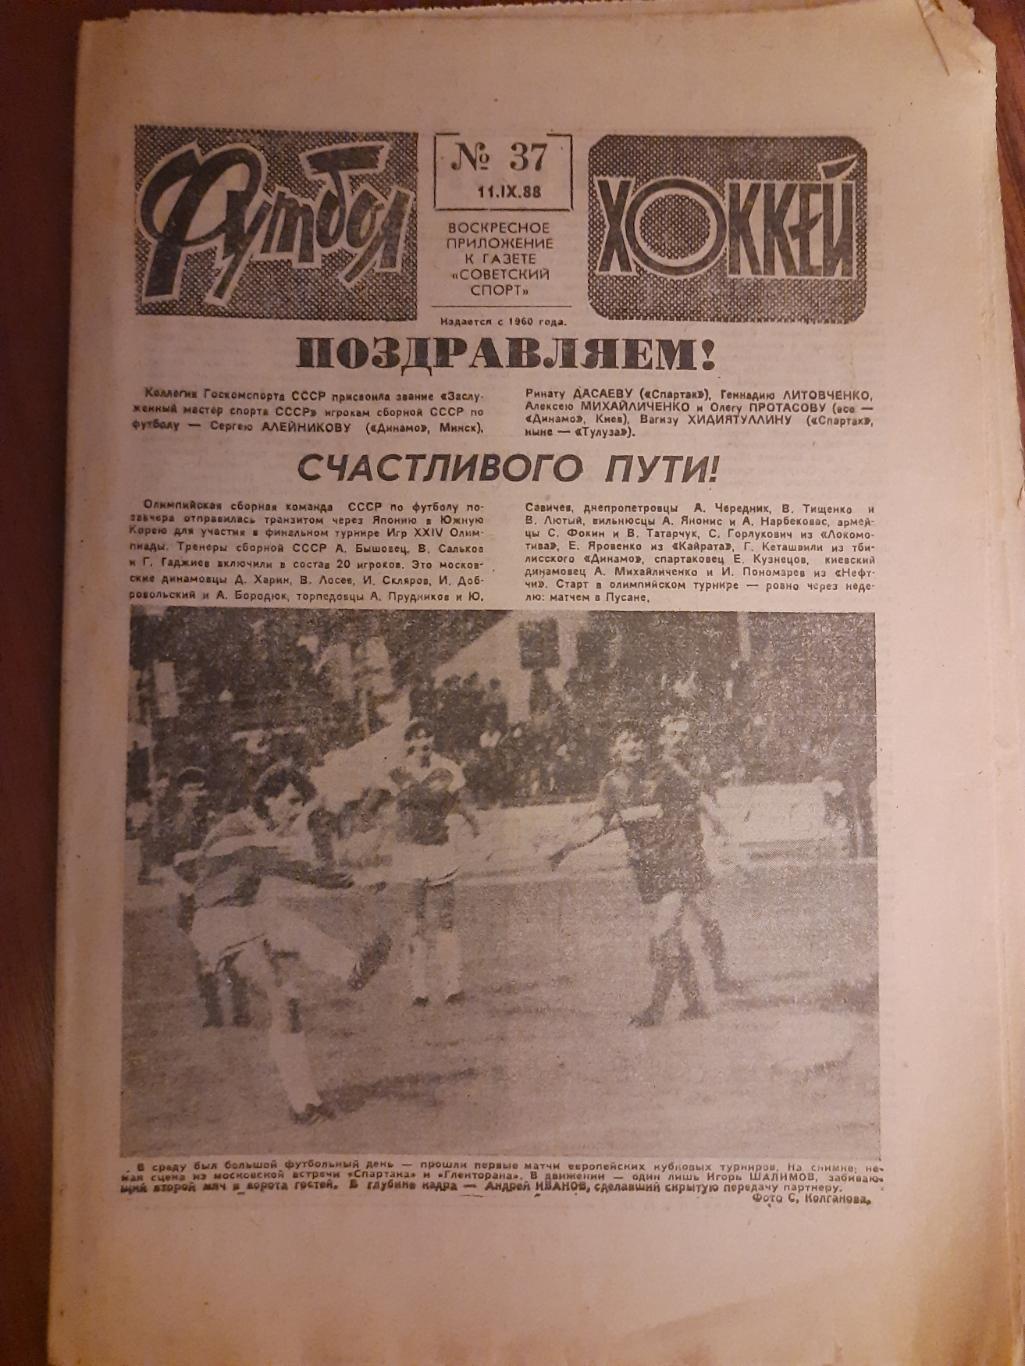 еженедельник футбол-хоккей #37,1988